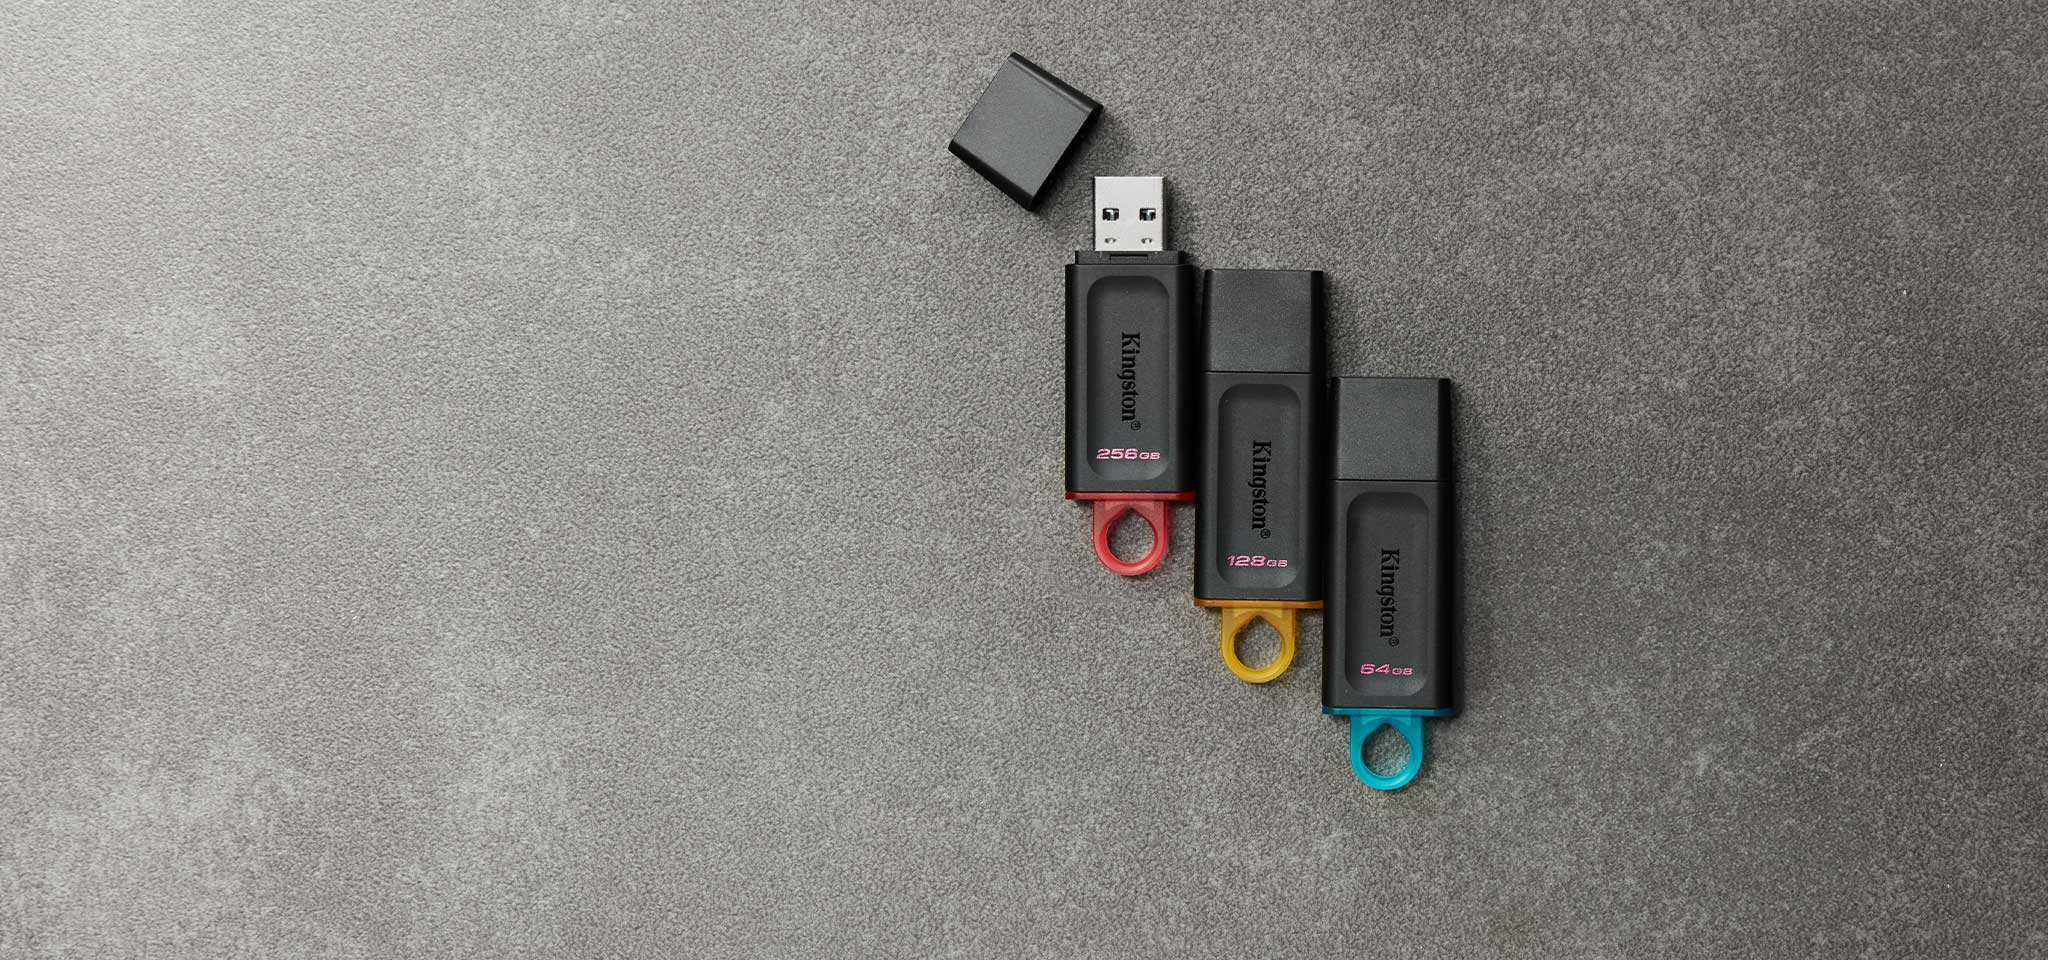 Ảnh nhìn từ trên cao về chiếc USB Flash DT Exodia nhiều màu khác nhau, ứng với các mức dung lượng khác nhau, đặt trên mặt thảm màu xám